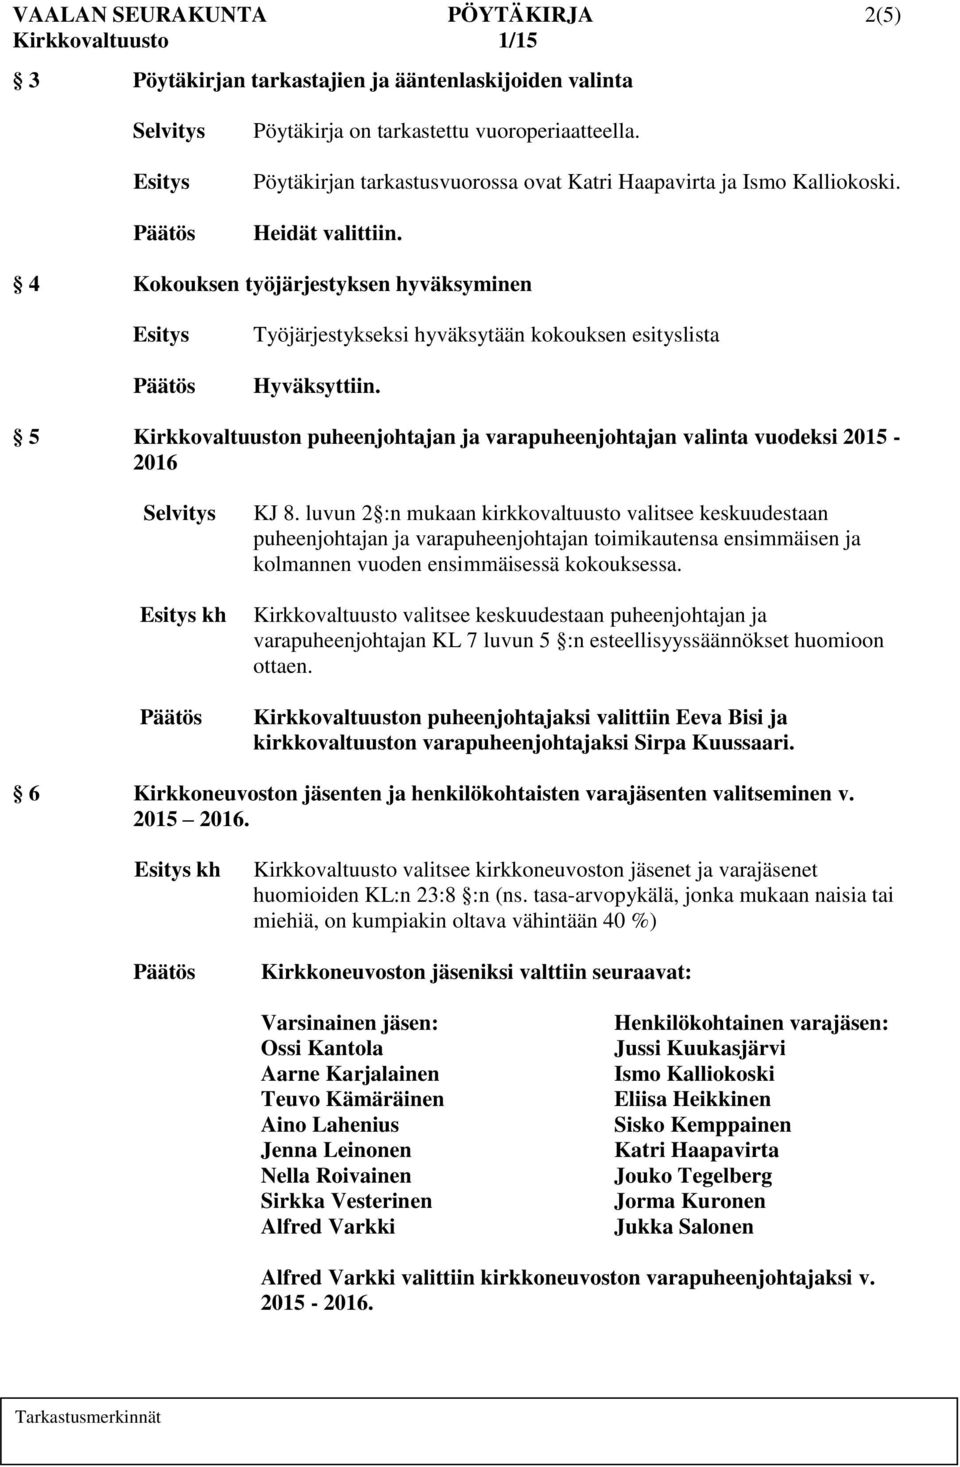 5 Kirkkovaltuuston puheenjohtajan ja varapuheenjohtajan valinta vuodeksi 2015-2016 kh KJ 8.